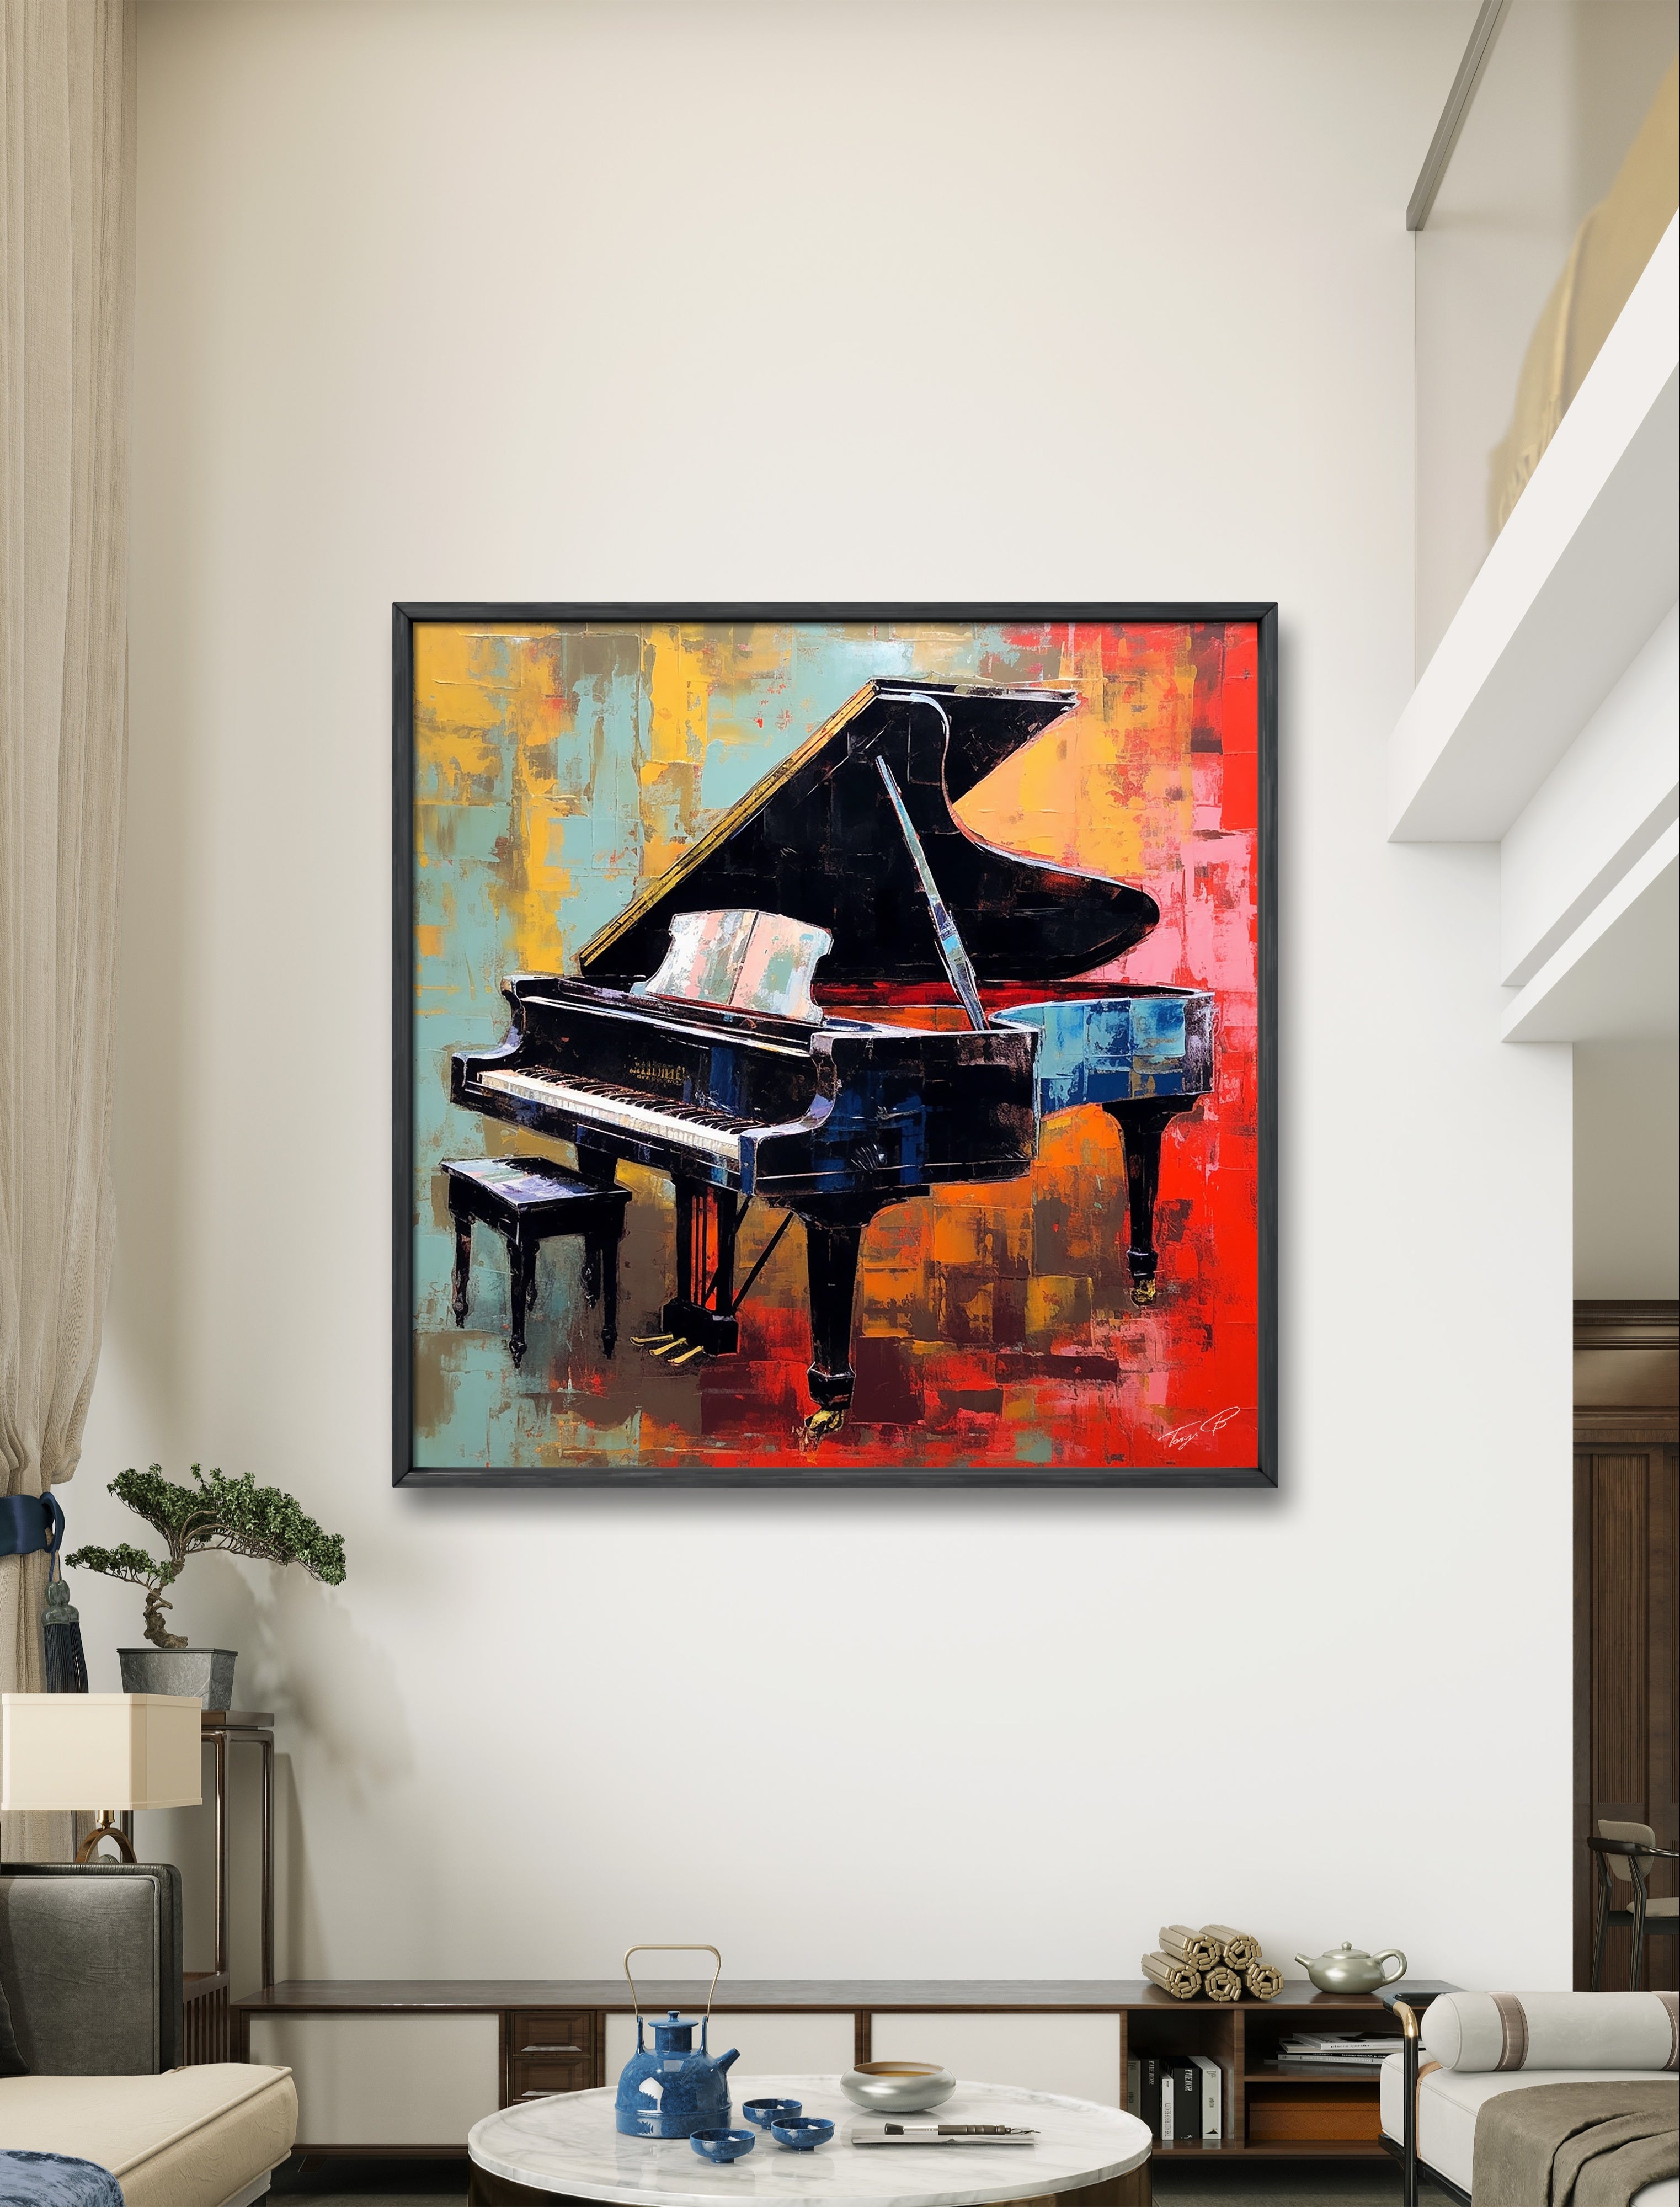 Piano: Harmony in Keys by Tony Illustrations